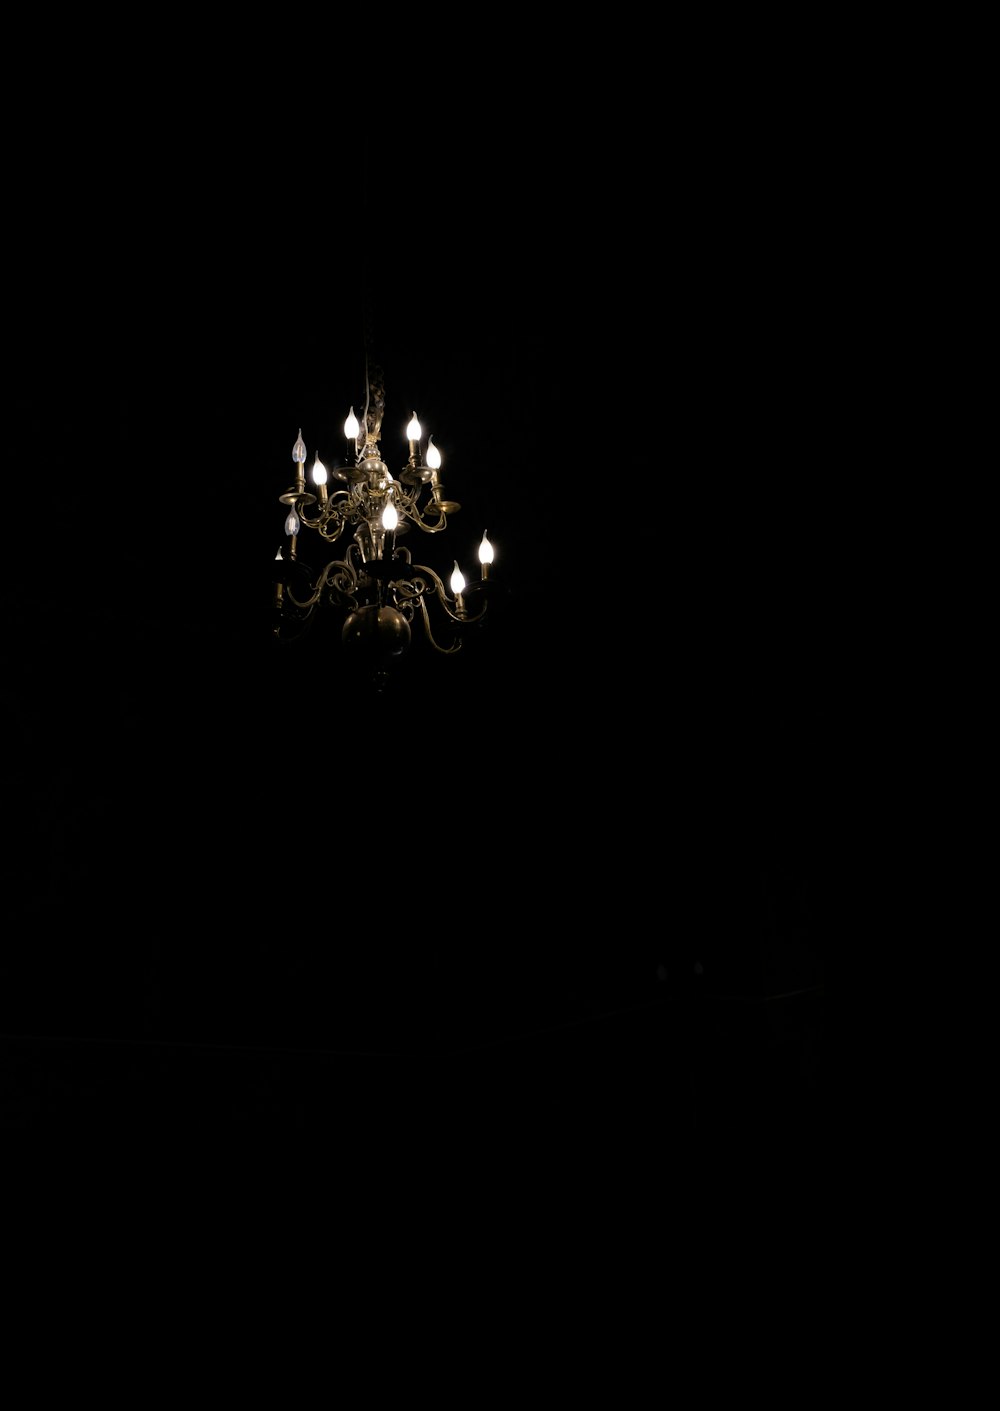 un lampadario appeso al soffitto in una stanza buia